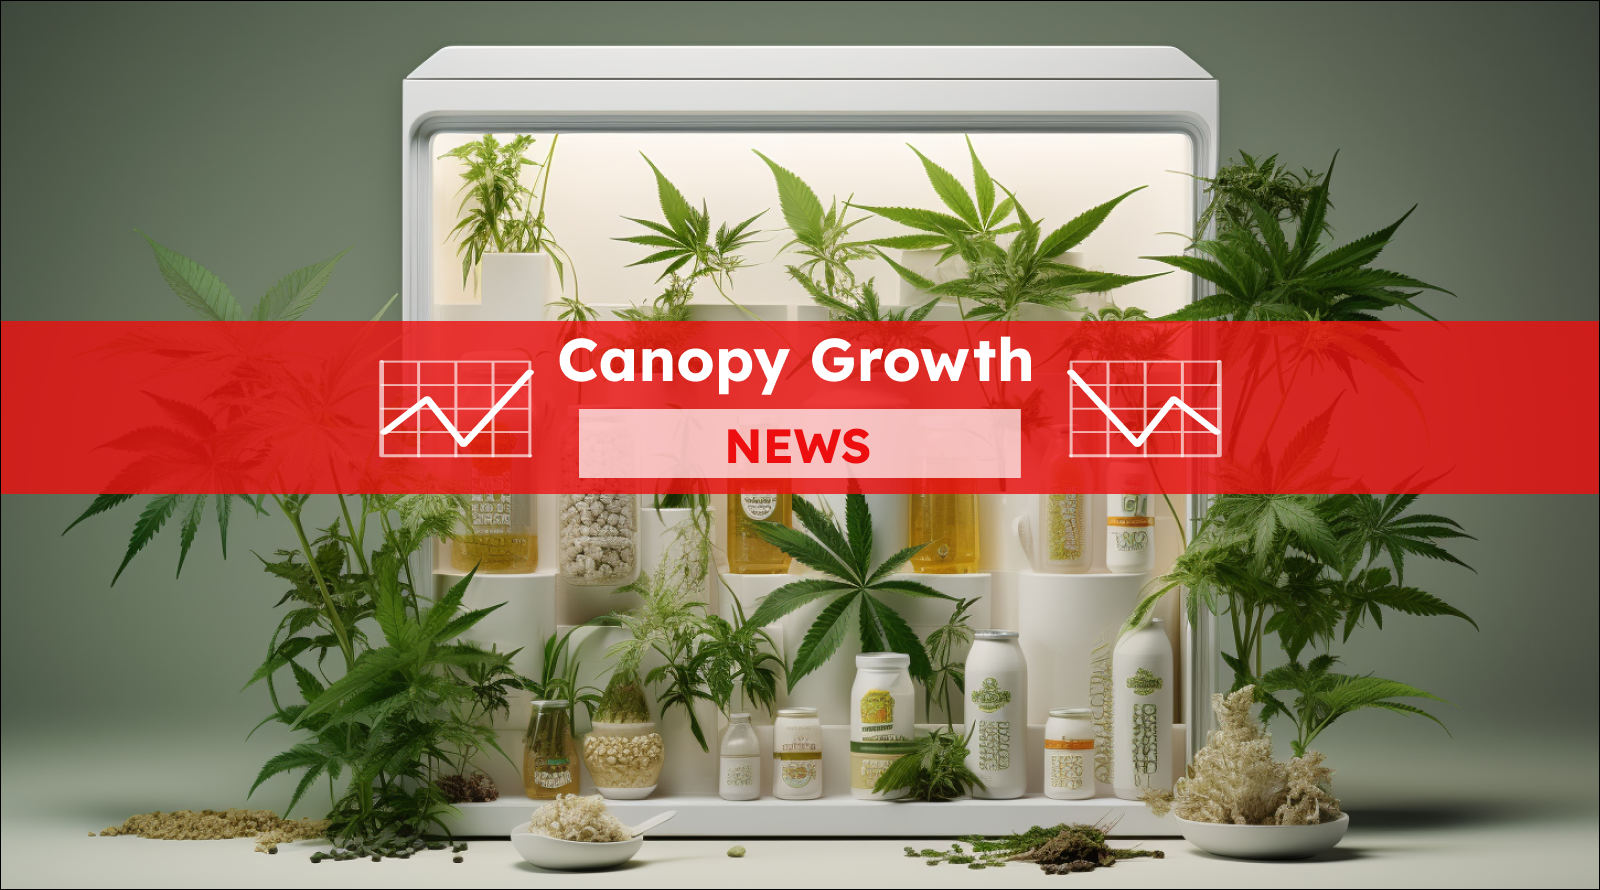 Veröffentliche ein Bild für einen Artikel über die Canopy Growth-Aktie